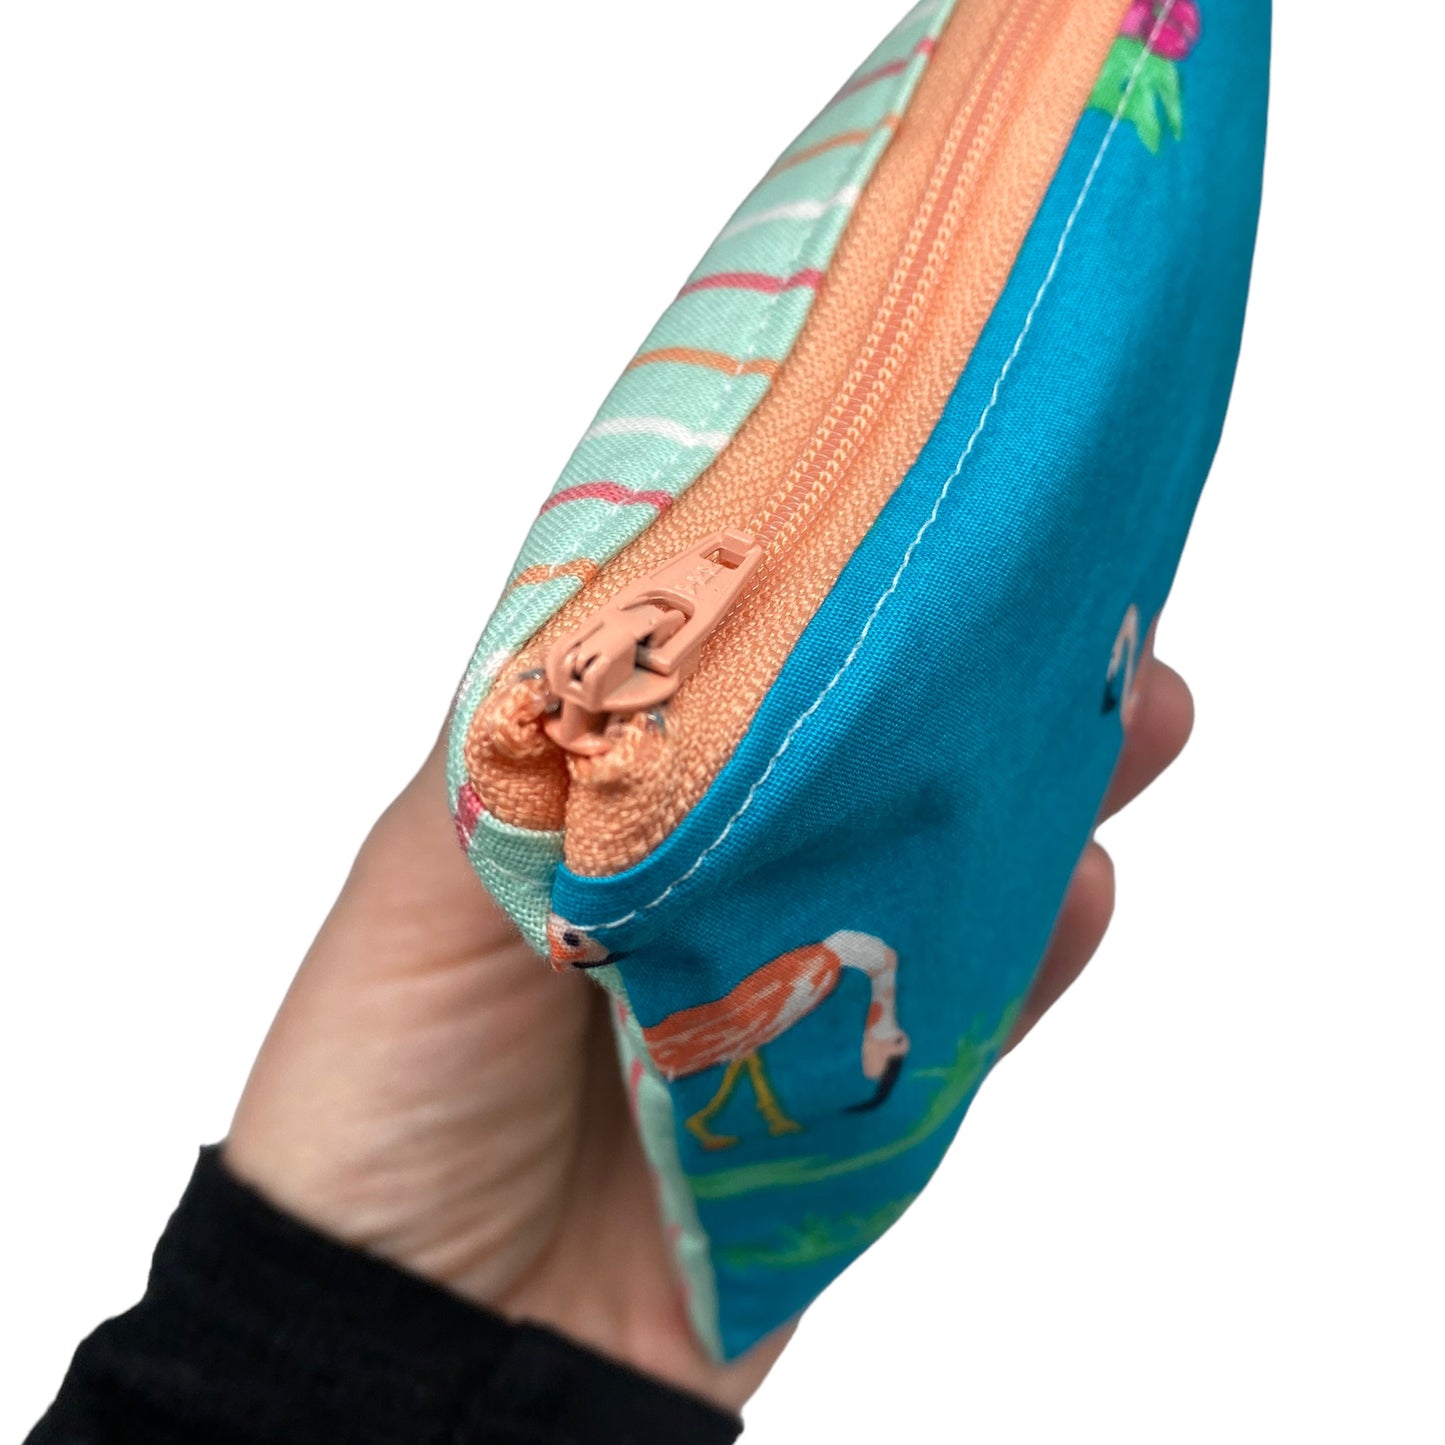 Toddler Sized Reusable Zippered Bag Flamingos Combo Print